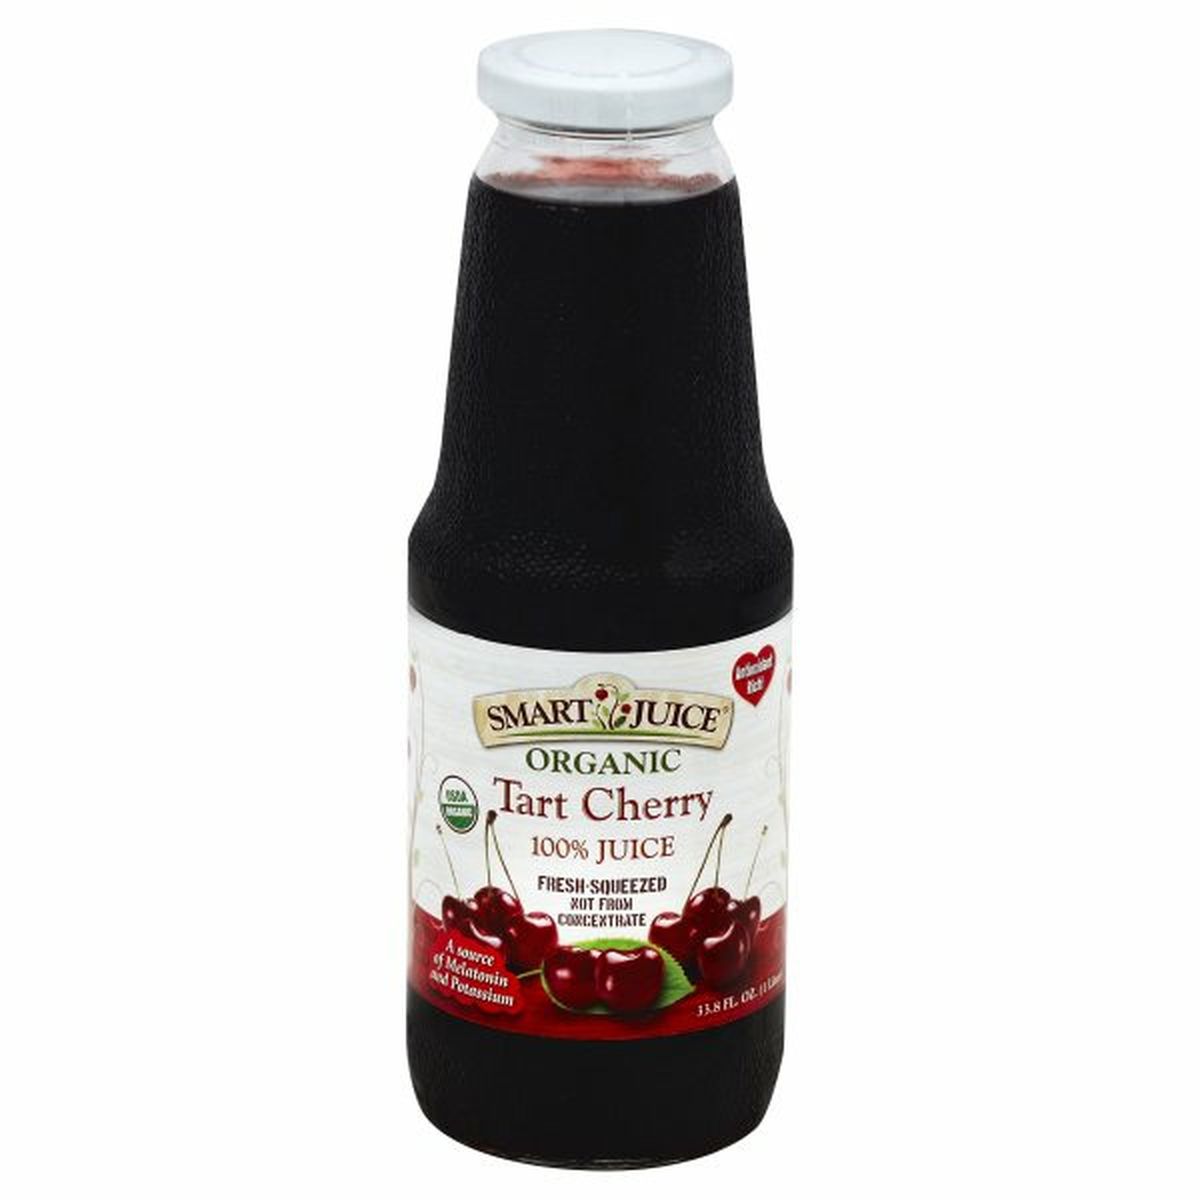 Calories in Smart Juice Organic 100% Juice, Tart Cherry